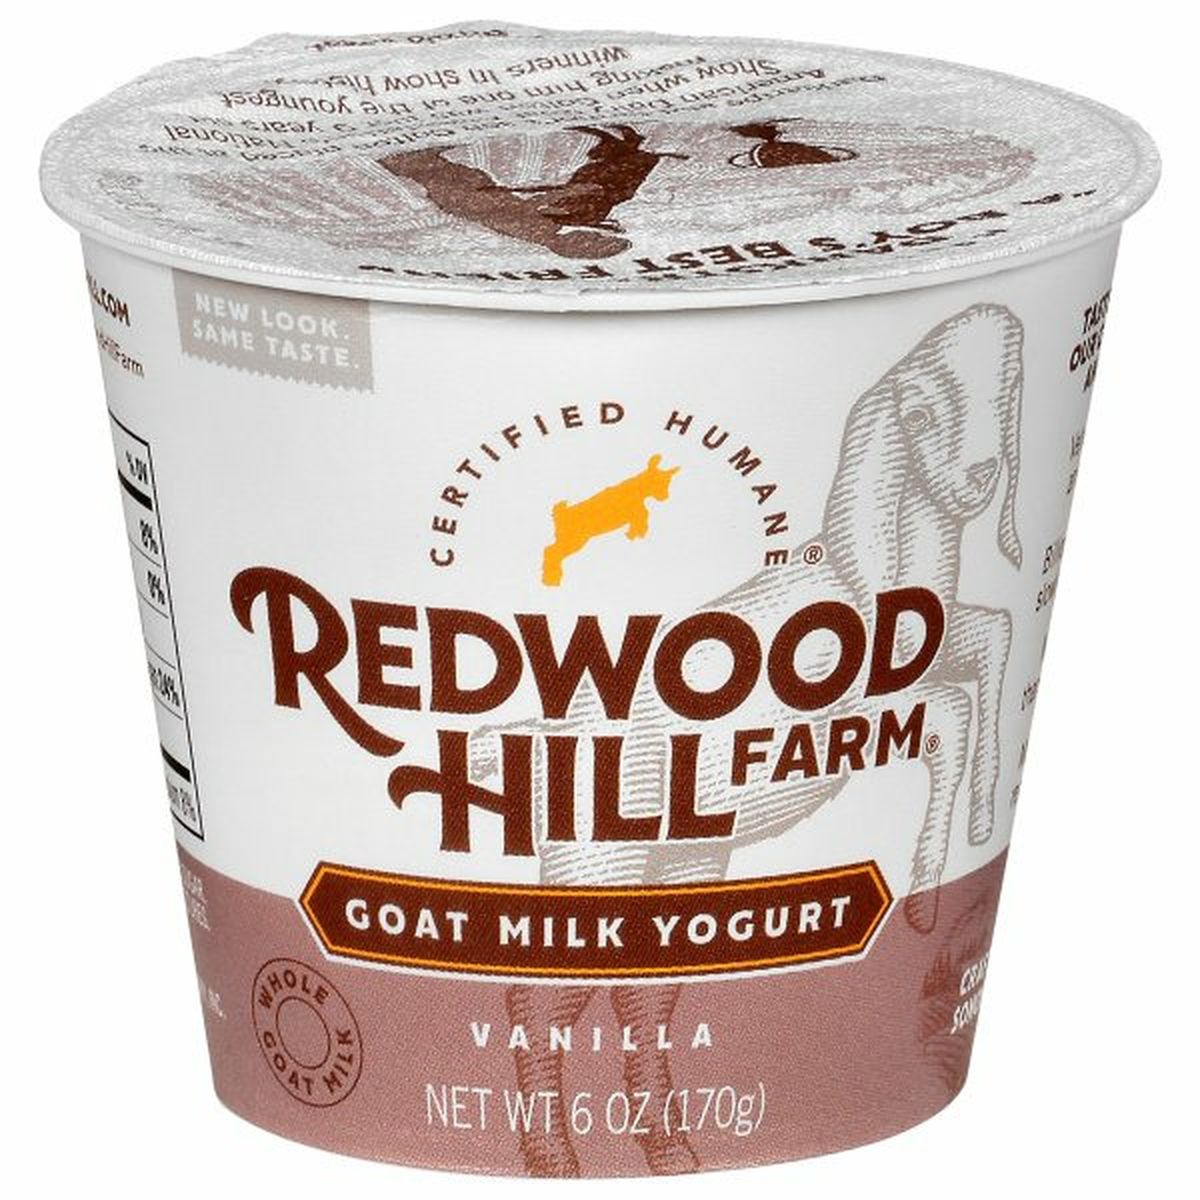 Calories in Redwood Hill Farm Yogurt, Goat Milk, Vanilla